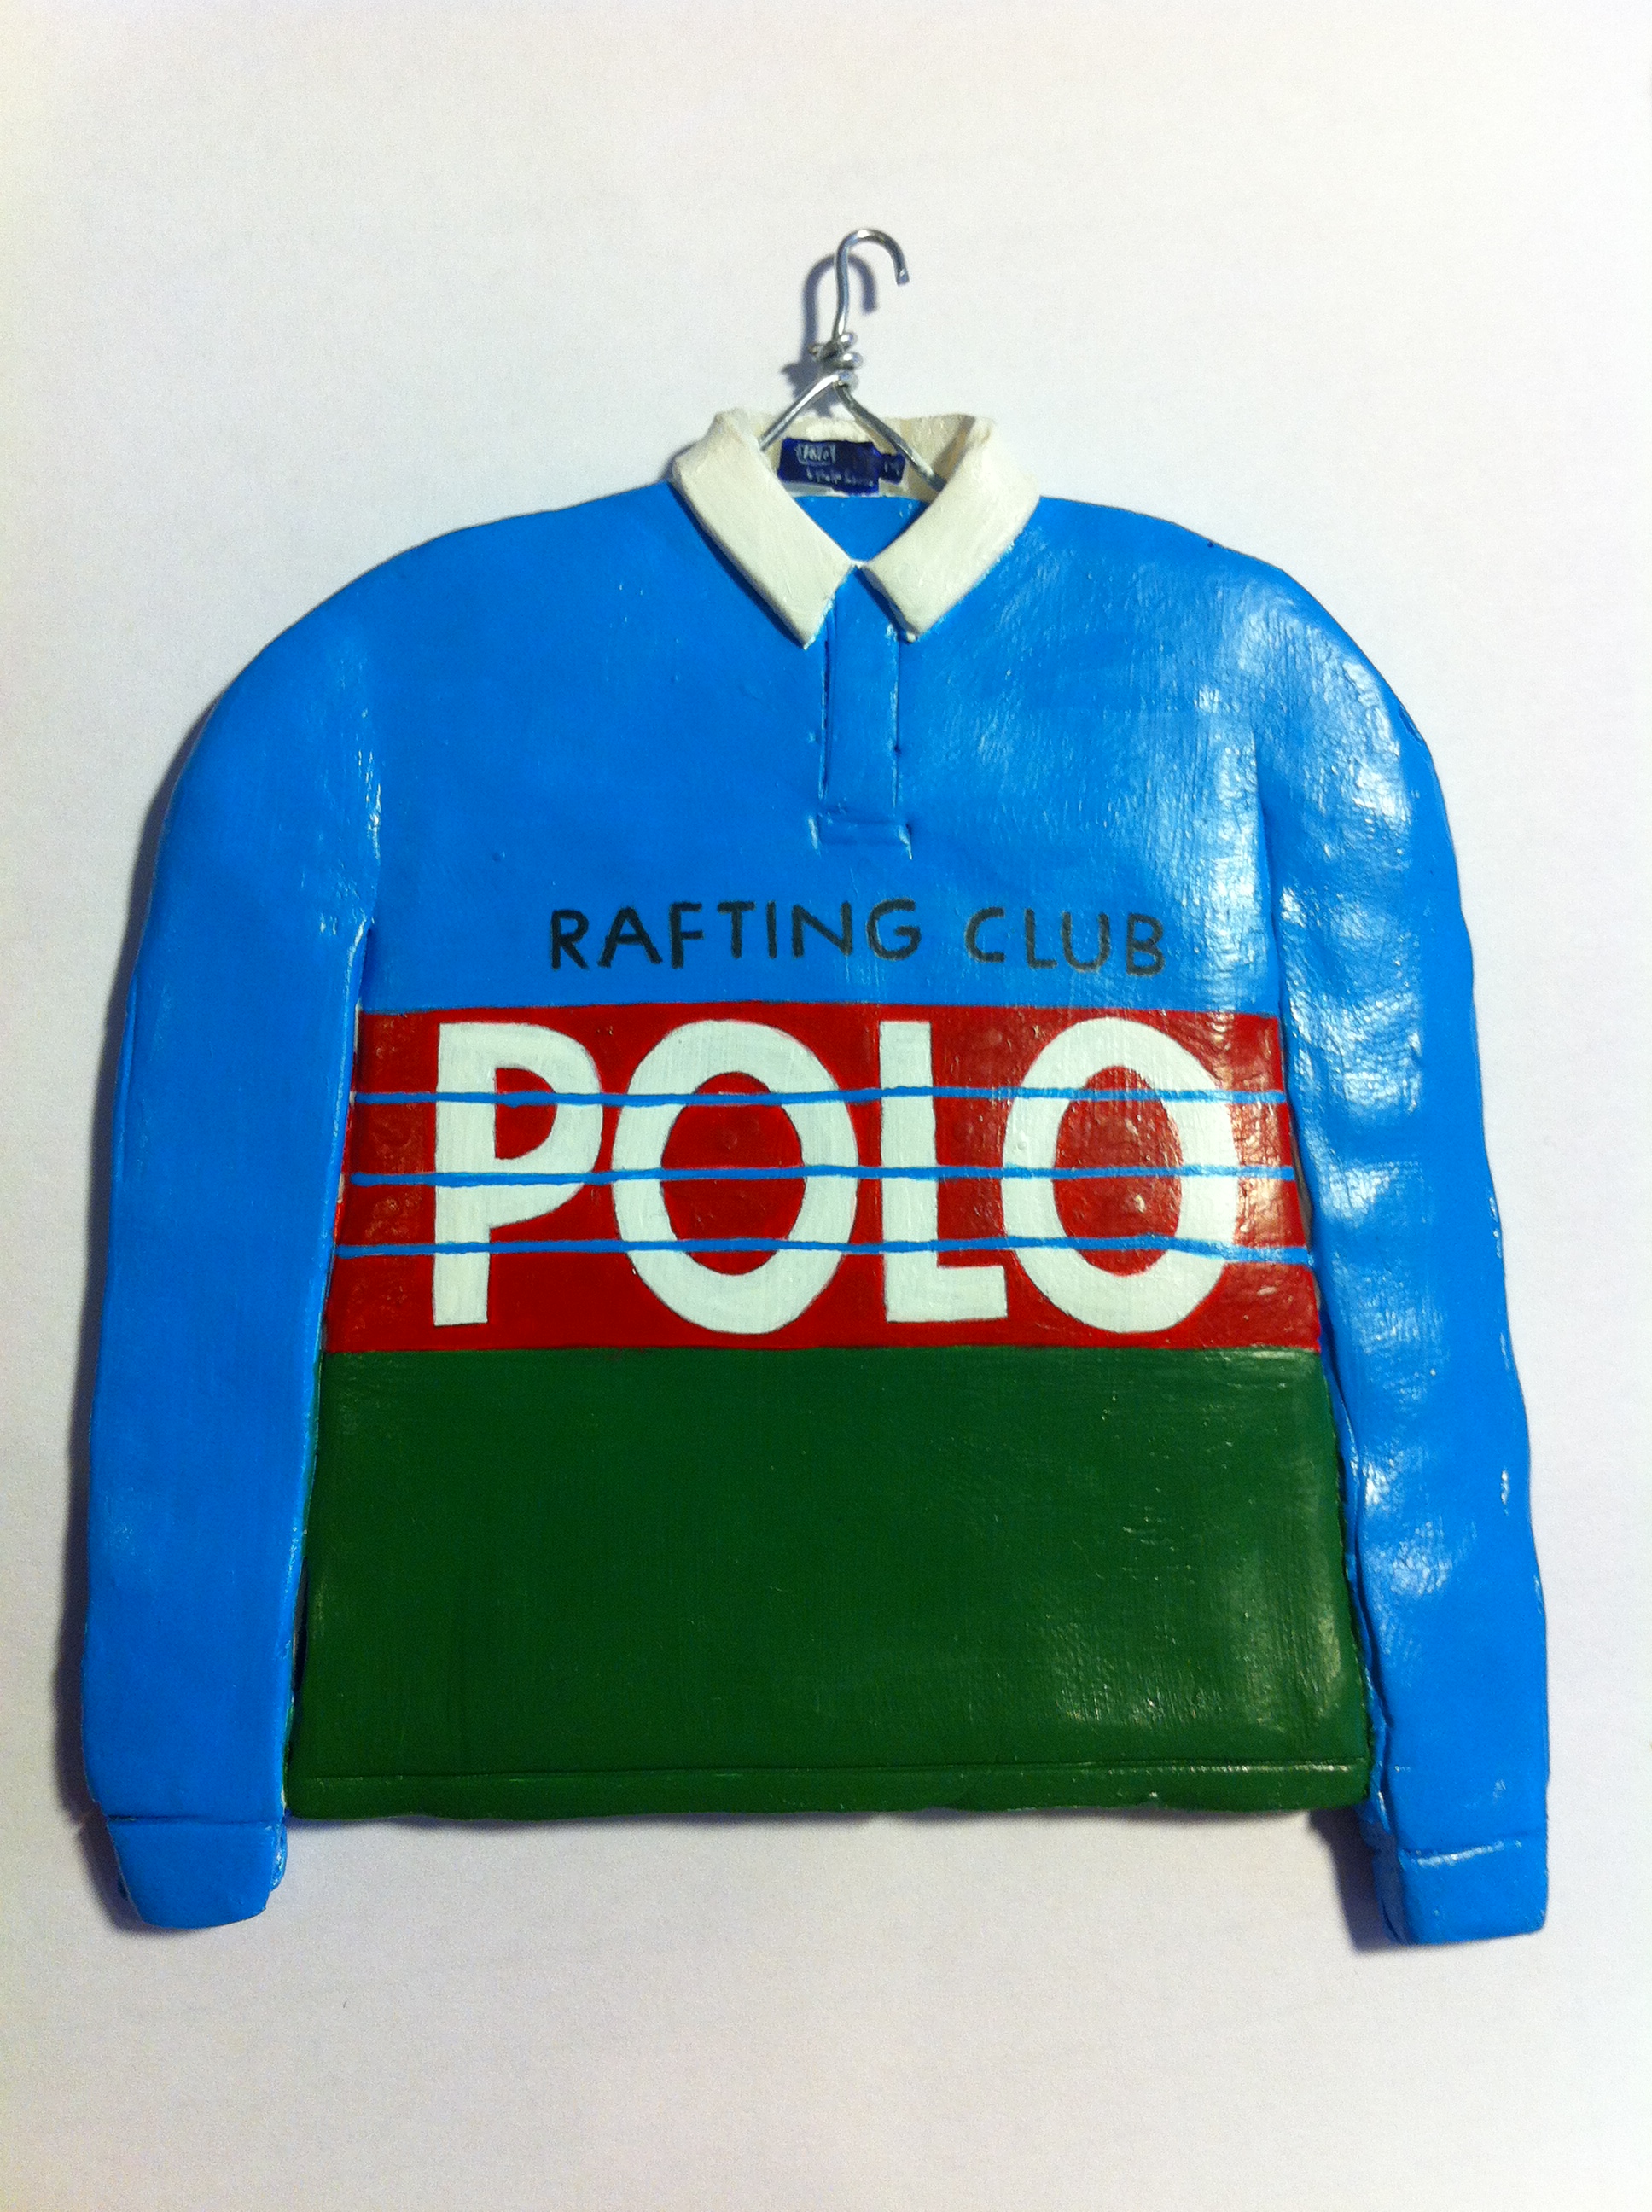 polo rafting club jacket